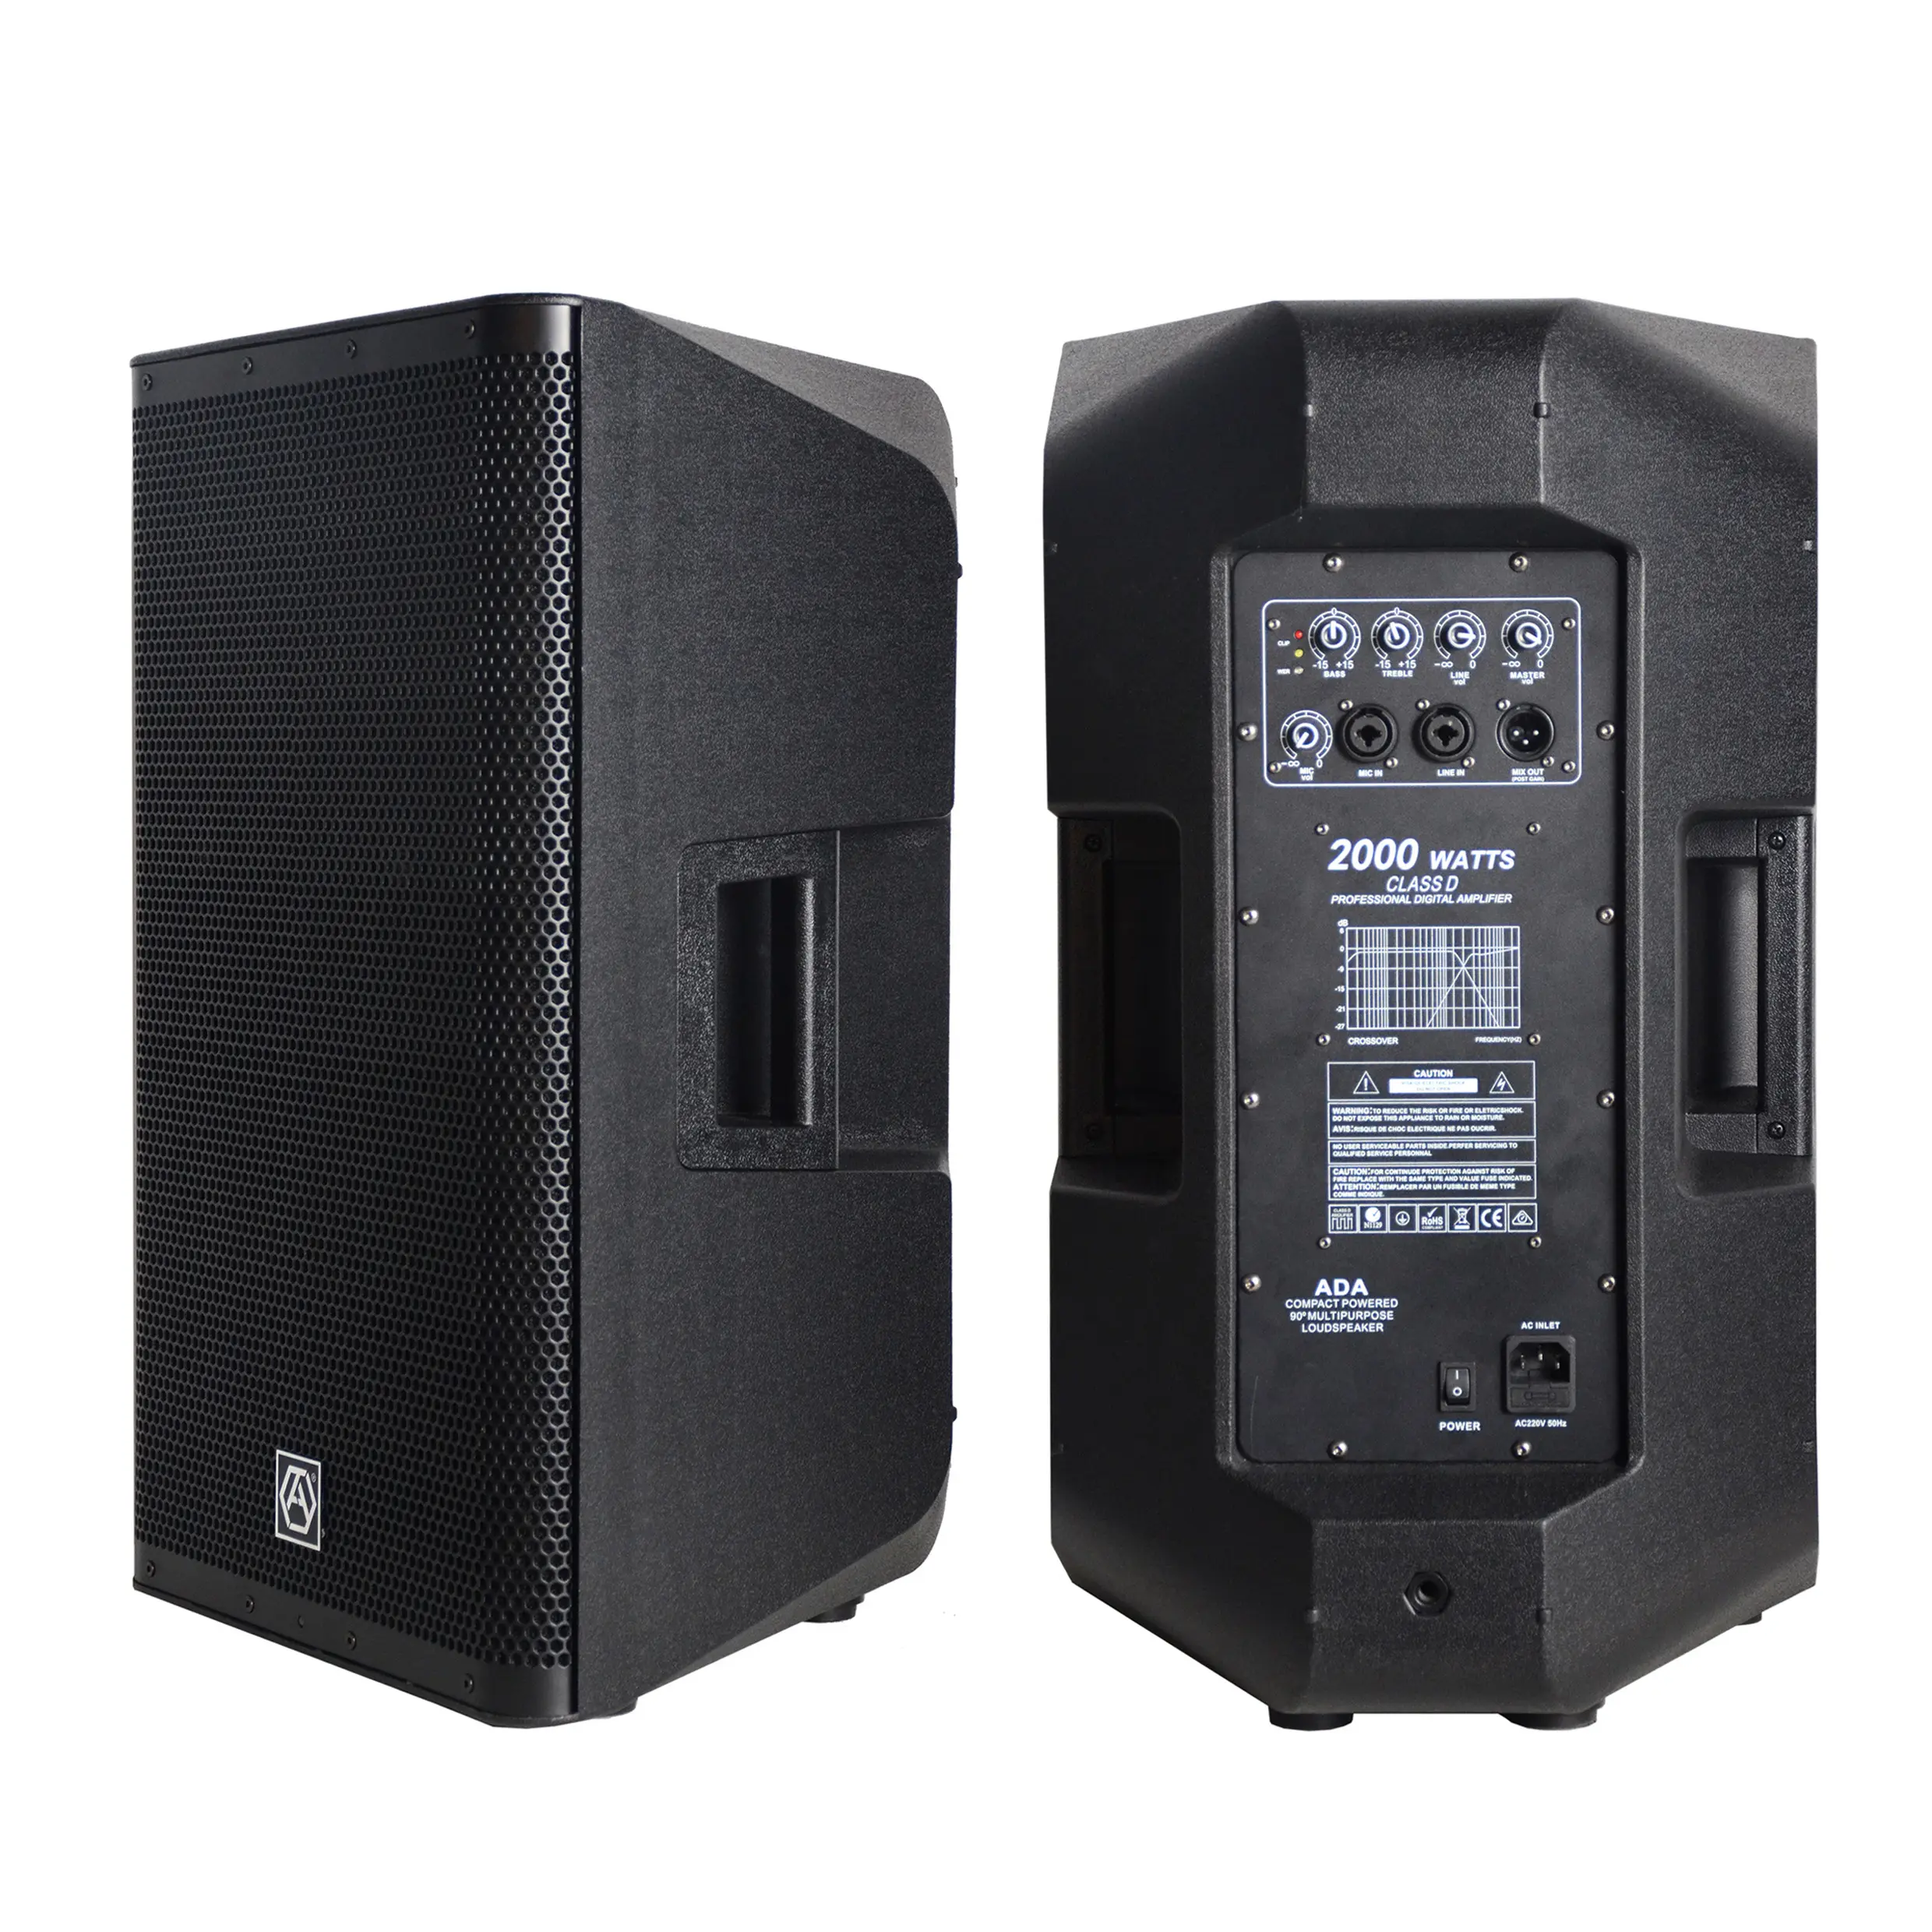 ACC CAU15ADA-altavoces profesionales PARA karaoke, caja de sonido digital activo de 500W, 15 pulgadas, para fiesta en casa, dj